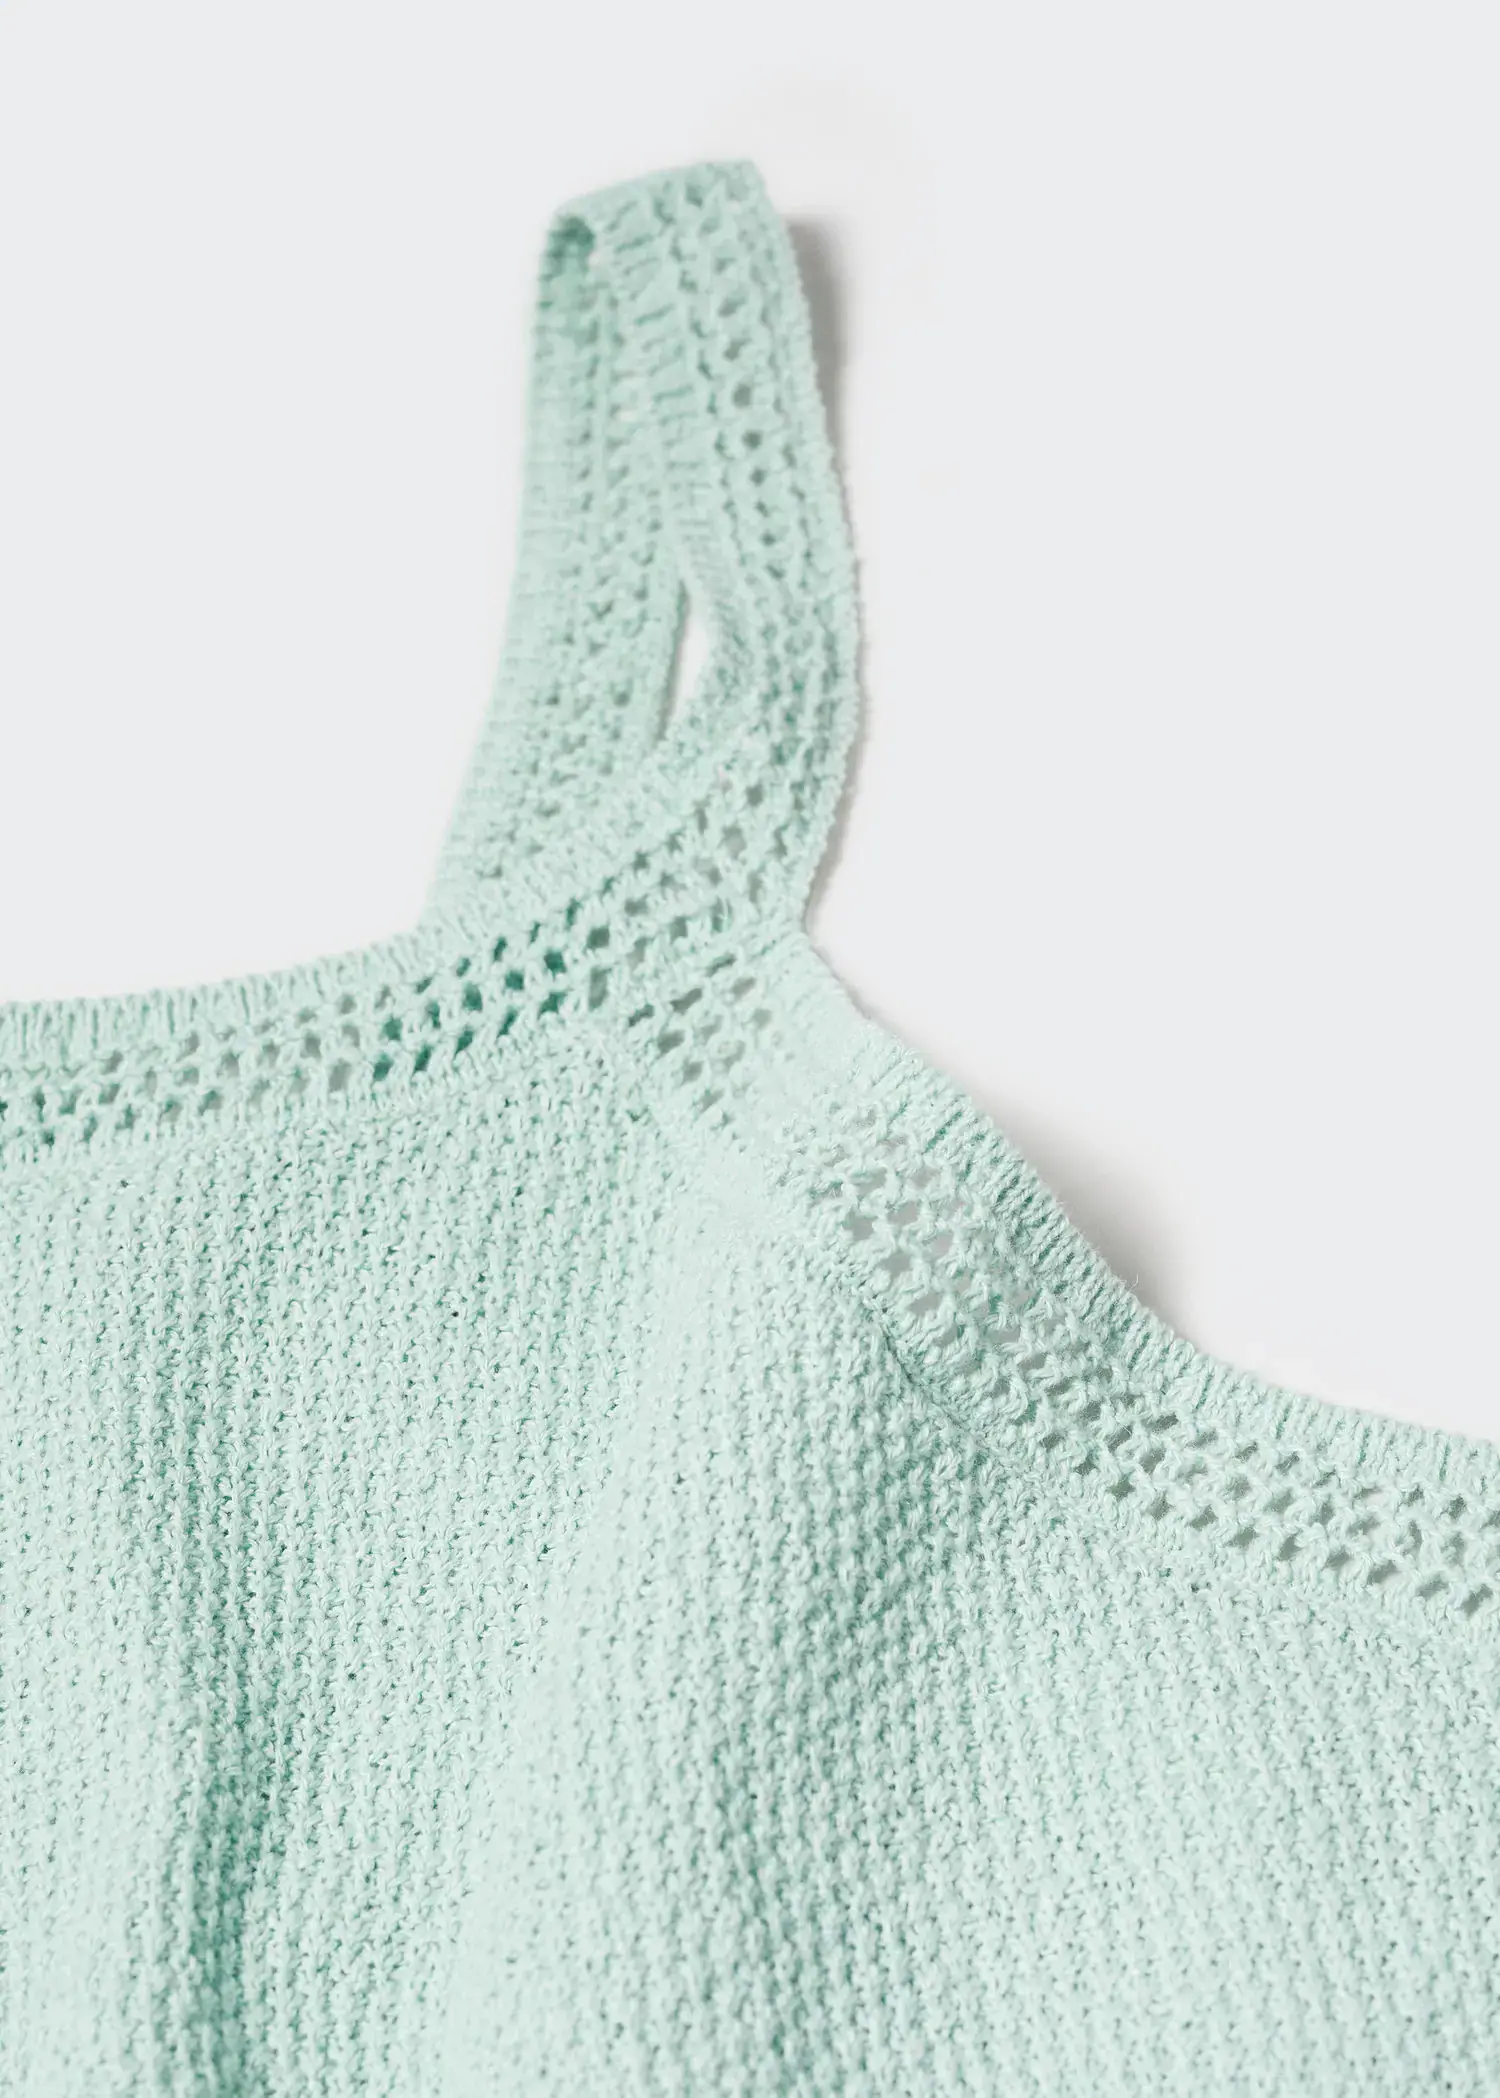 Mango Crochet top. a close-up view of a light blue top. 